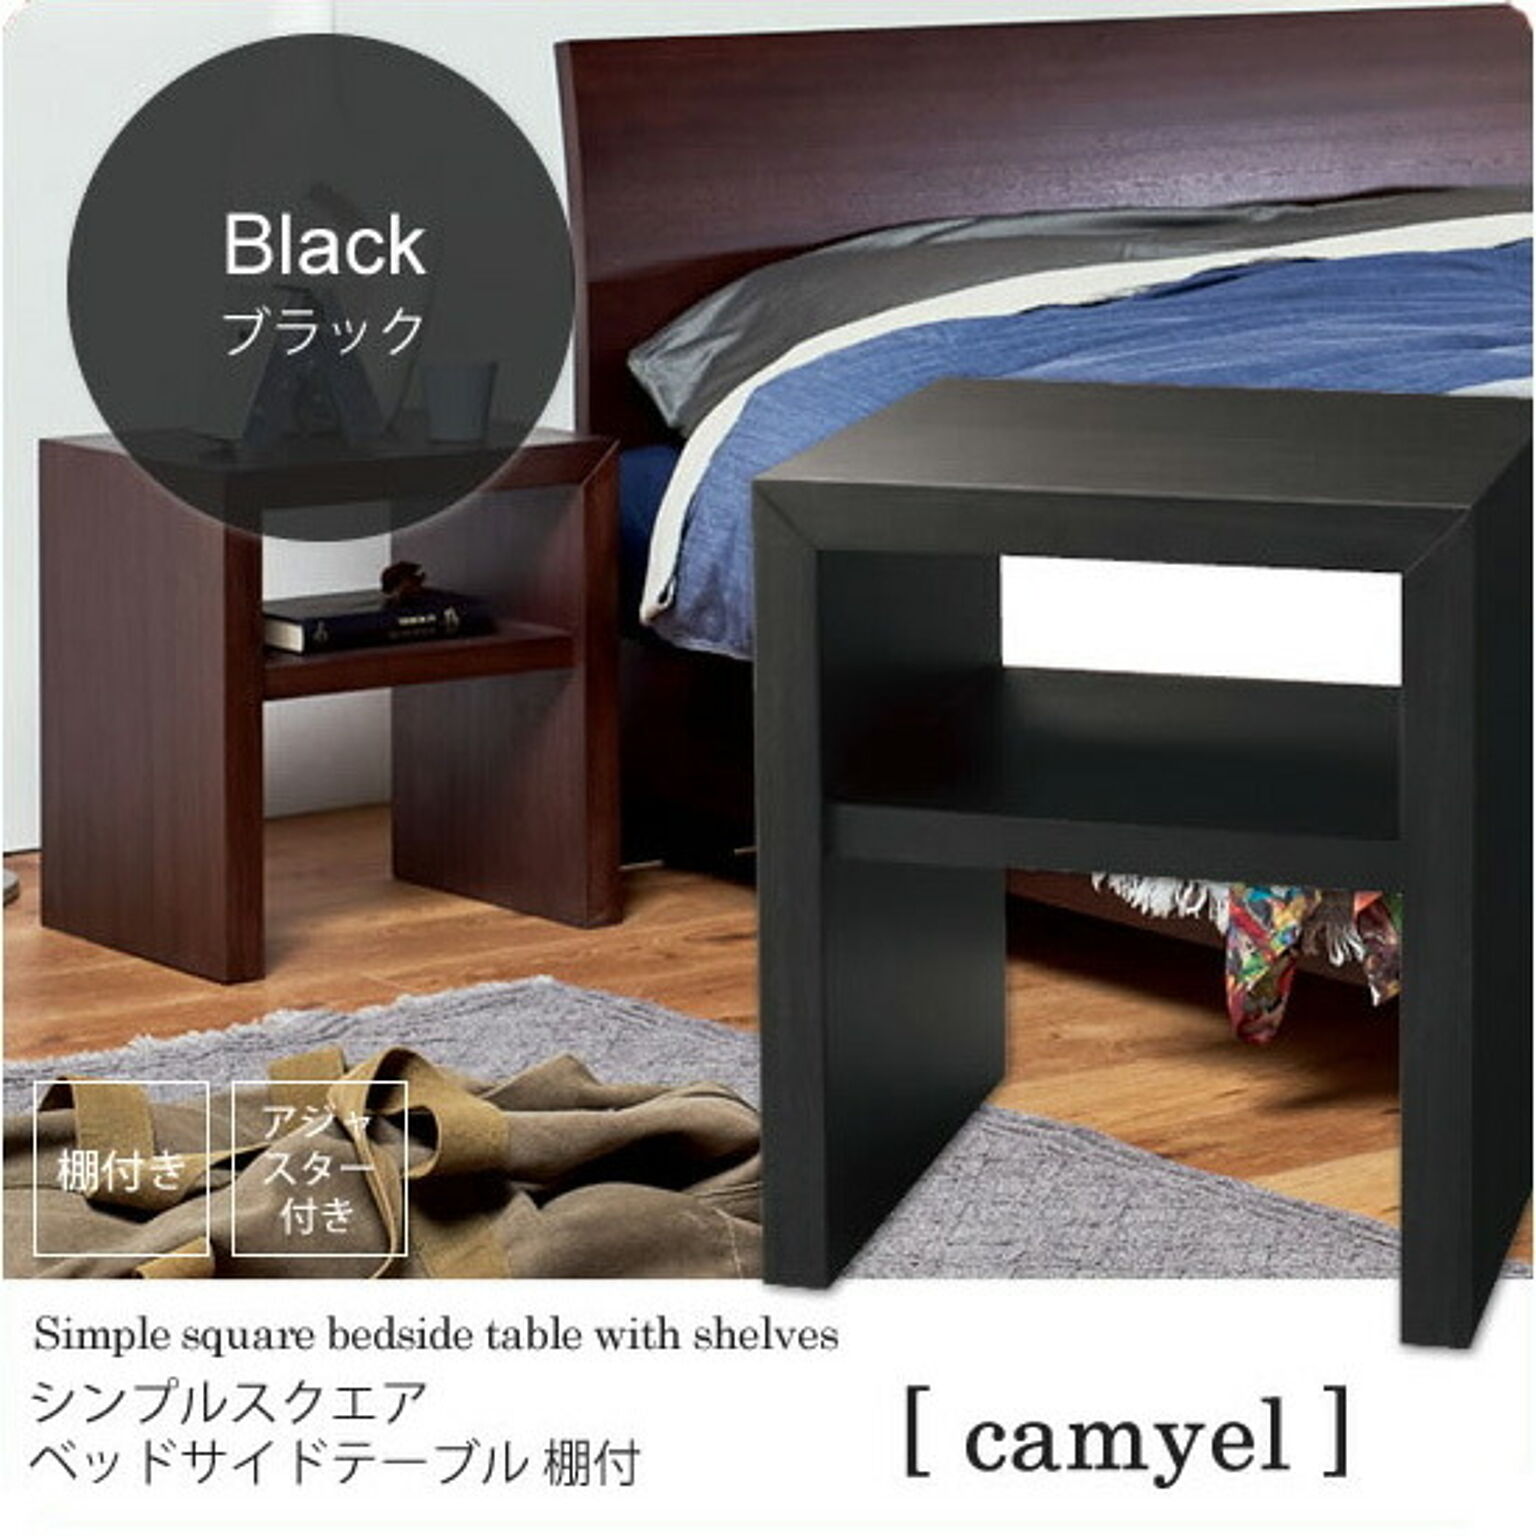 ブラック ： シンプルスクエア ベッドサイドテーブル 棚付【camyel】 ウッディブラック(black) ナイトテーブル 寝室 フリーラック 棚 ベッドテーブル カジュアル 